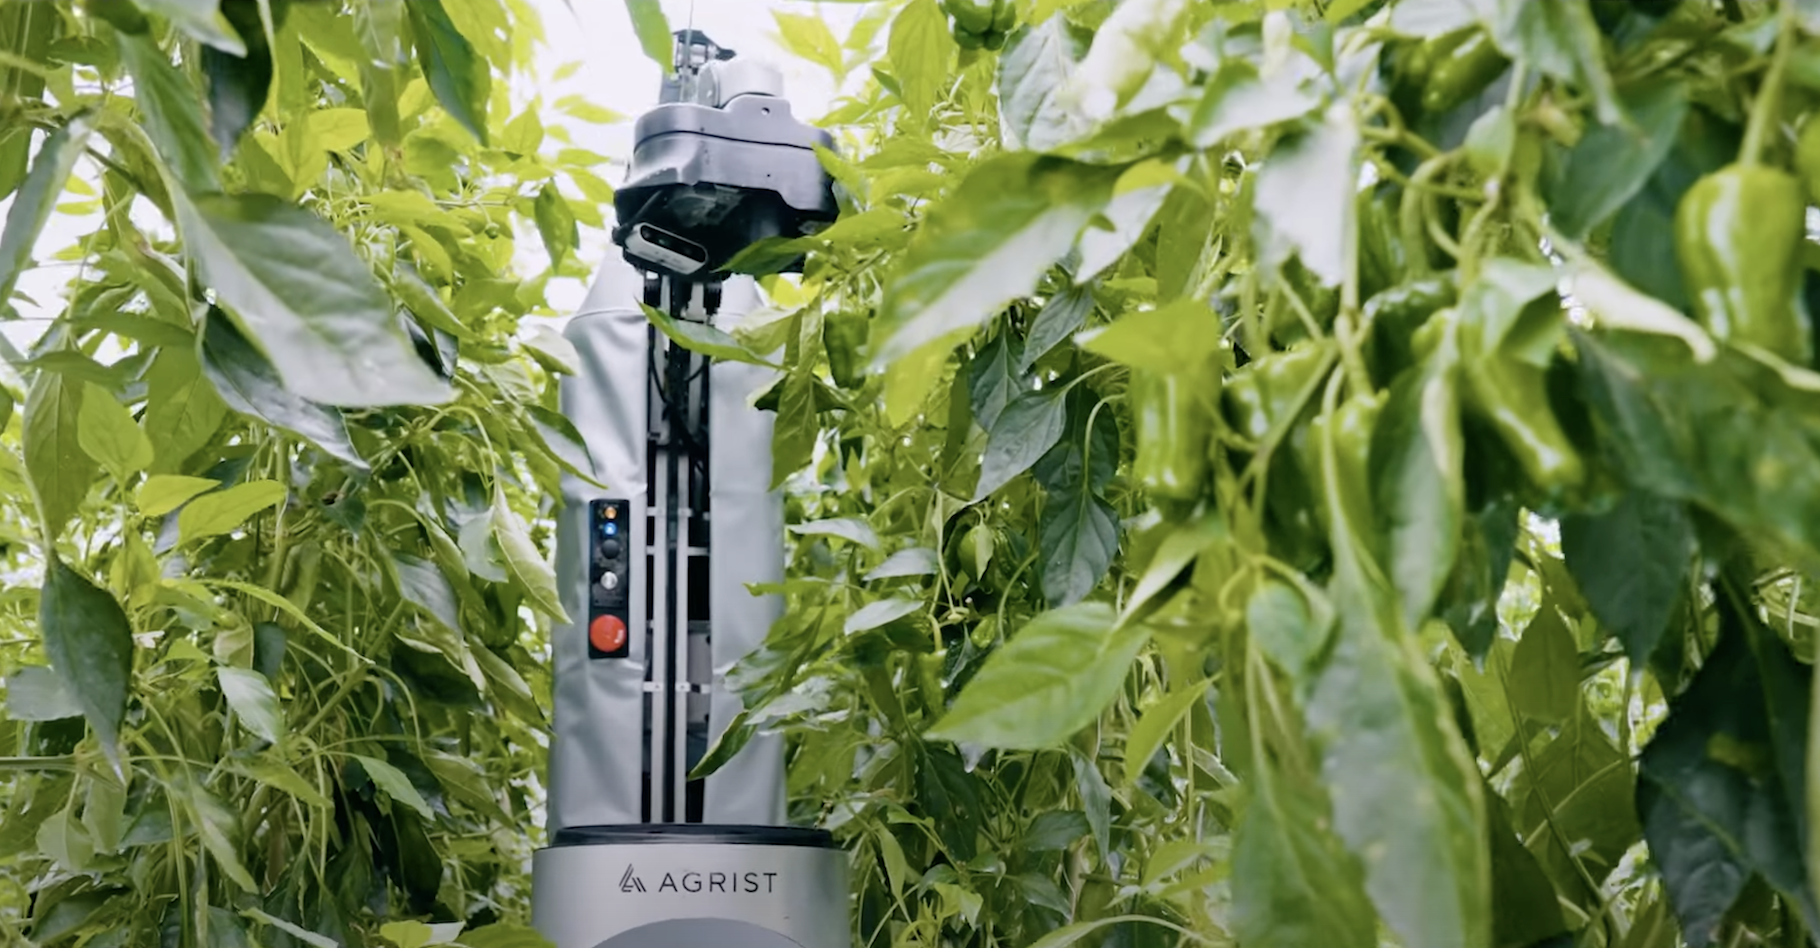 La société Agrist a développé un robot capable de cueillir les poivrons mûrs sous les serres. © Agrist